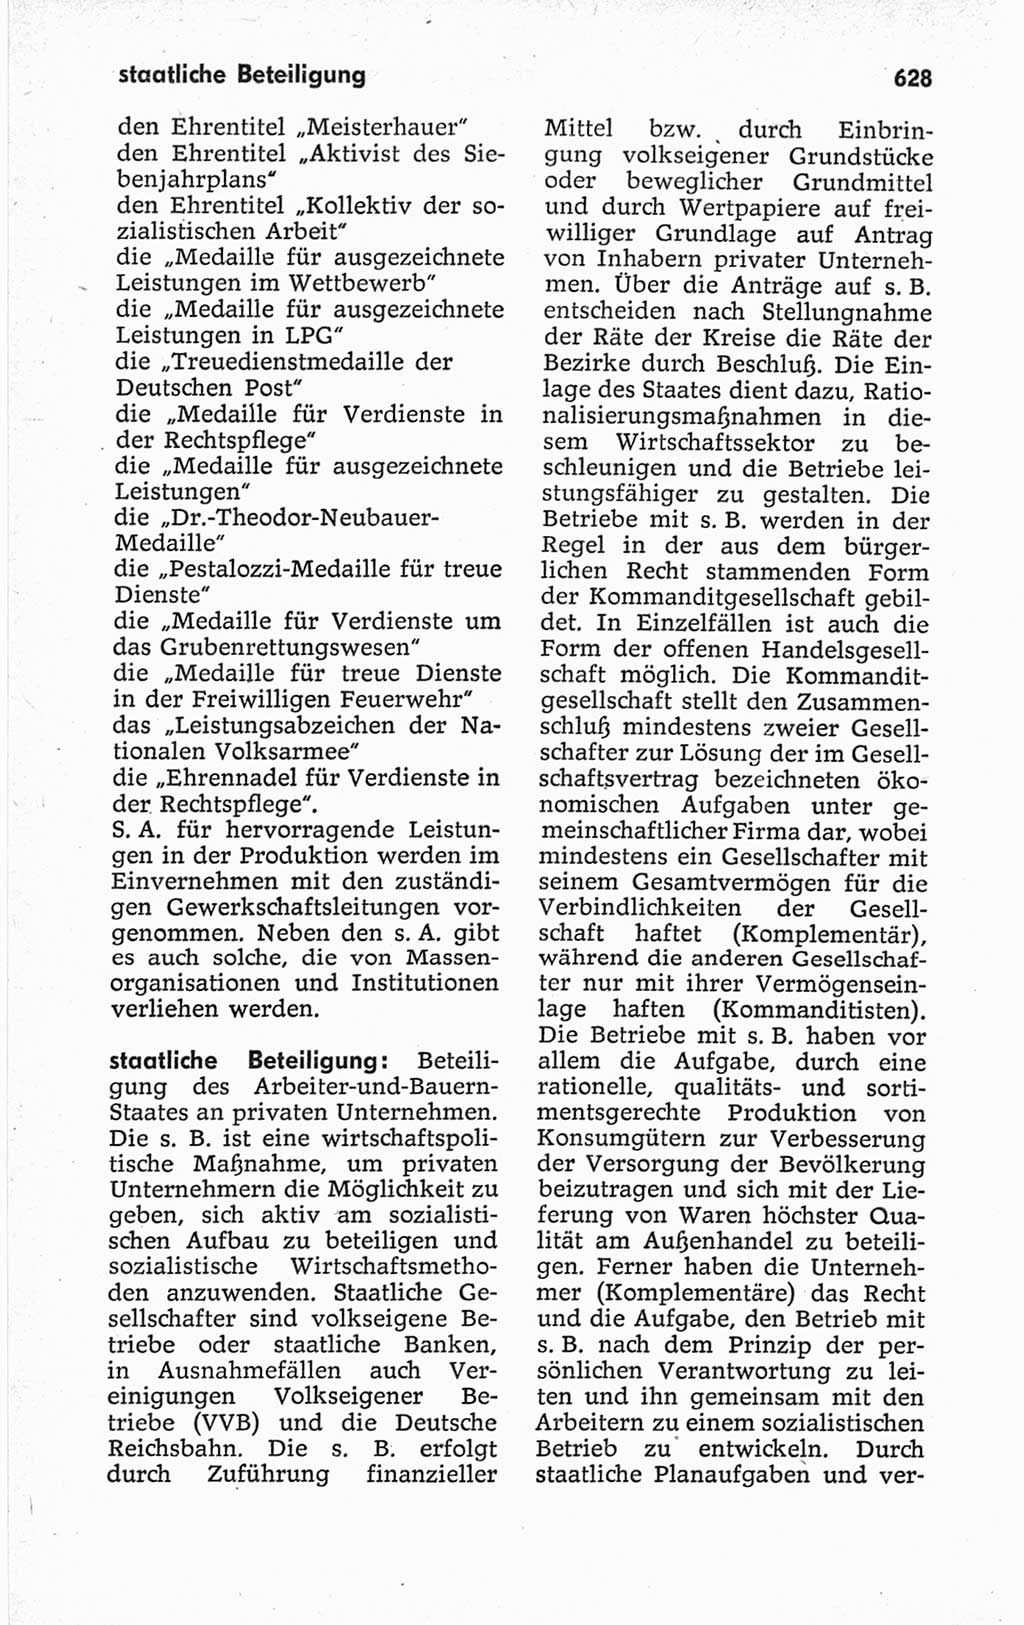 Kleines politisches Wörterbuch [Deutsche Demokratische Republik (DDR)] 1967, Seite 628 (Kl. pol. Wb. DDR 1967, S. 628)